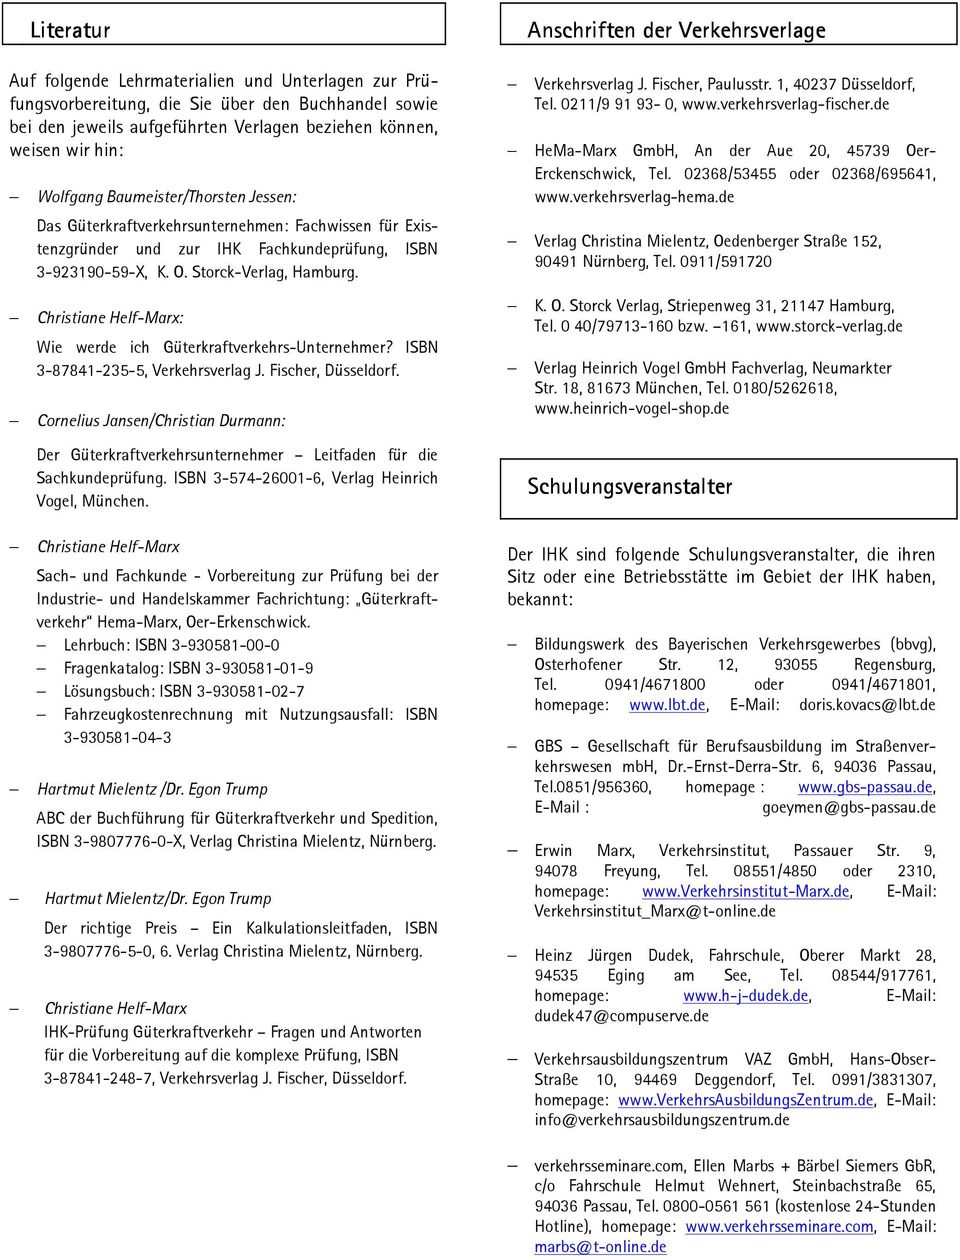 Christiane Helf-Marx: Wie werde ich Güterkraftverkehrs-Unternehmer? ISBN 3-87841-235-5, Verkehrsverlag J. Fischer, Düsseldorf.